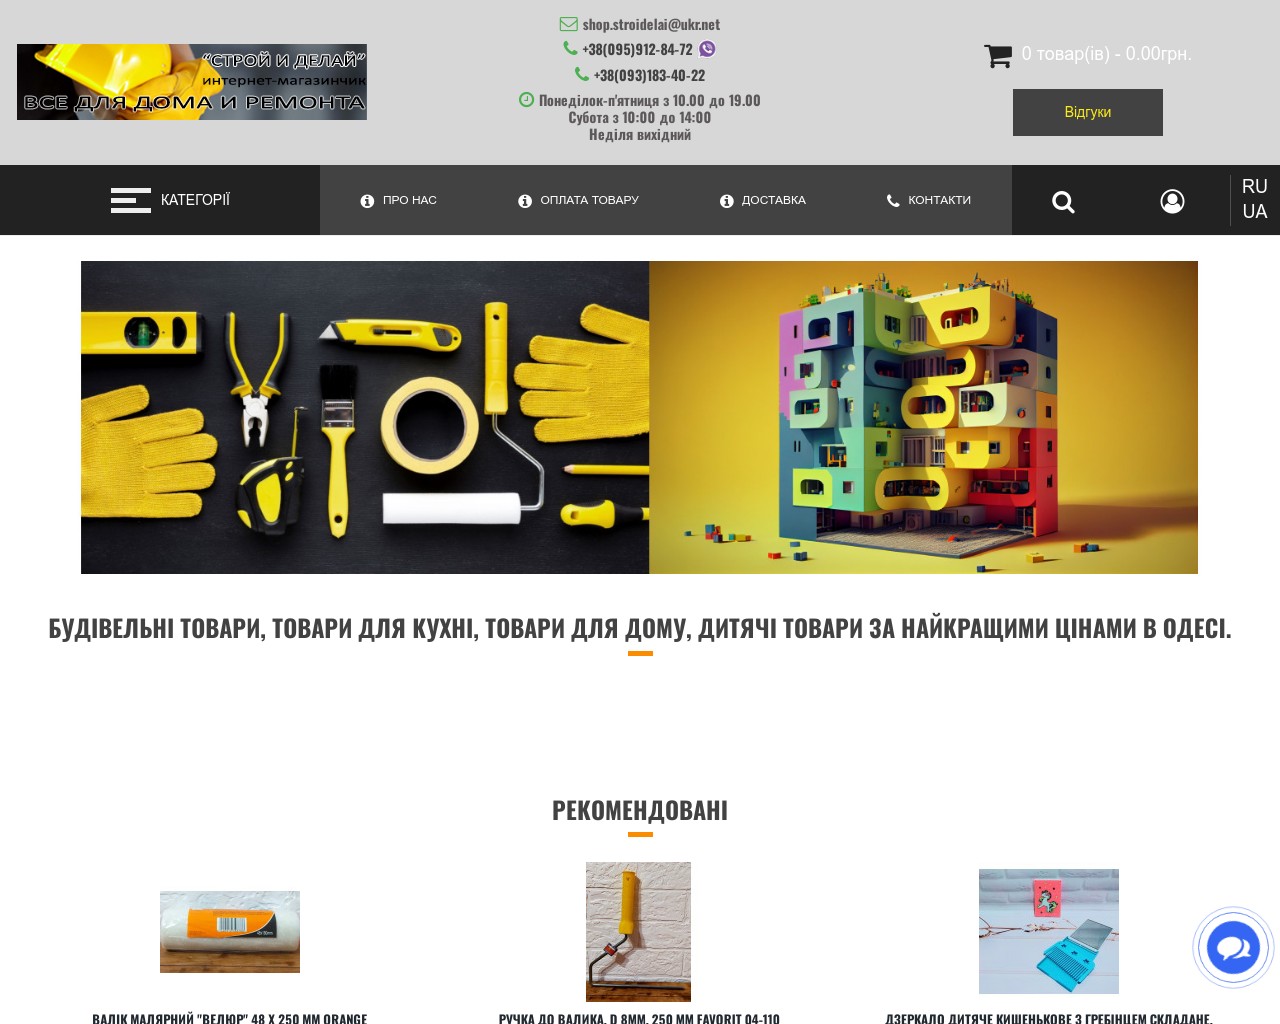 Изображение скриншота сайта - "Строй и Делай" товары для дома, ремонта, строительства по доступным ценам.